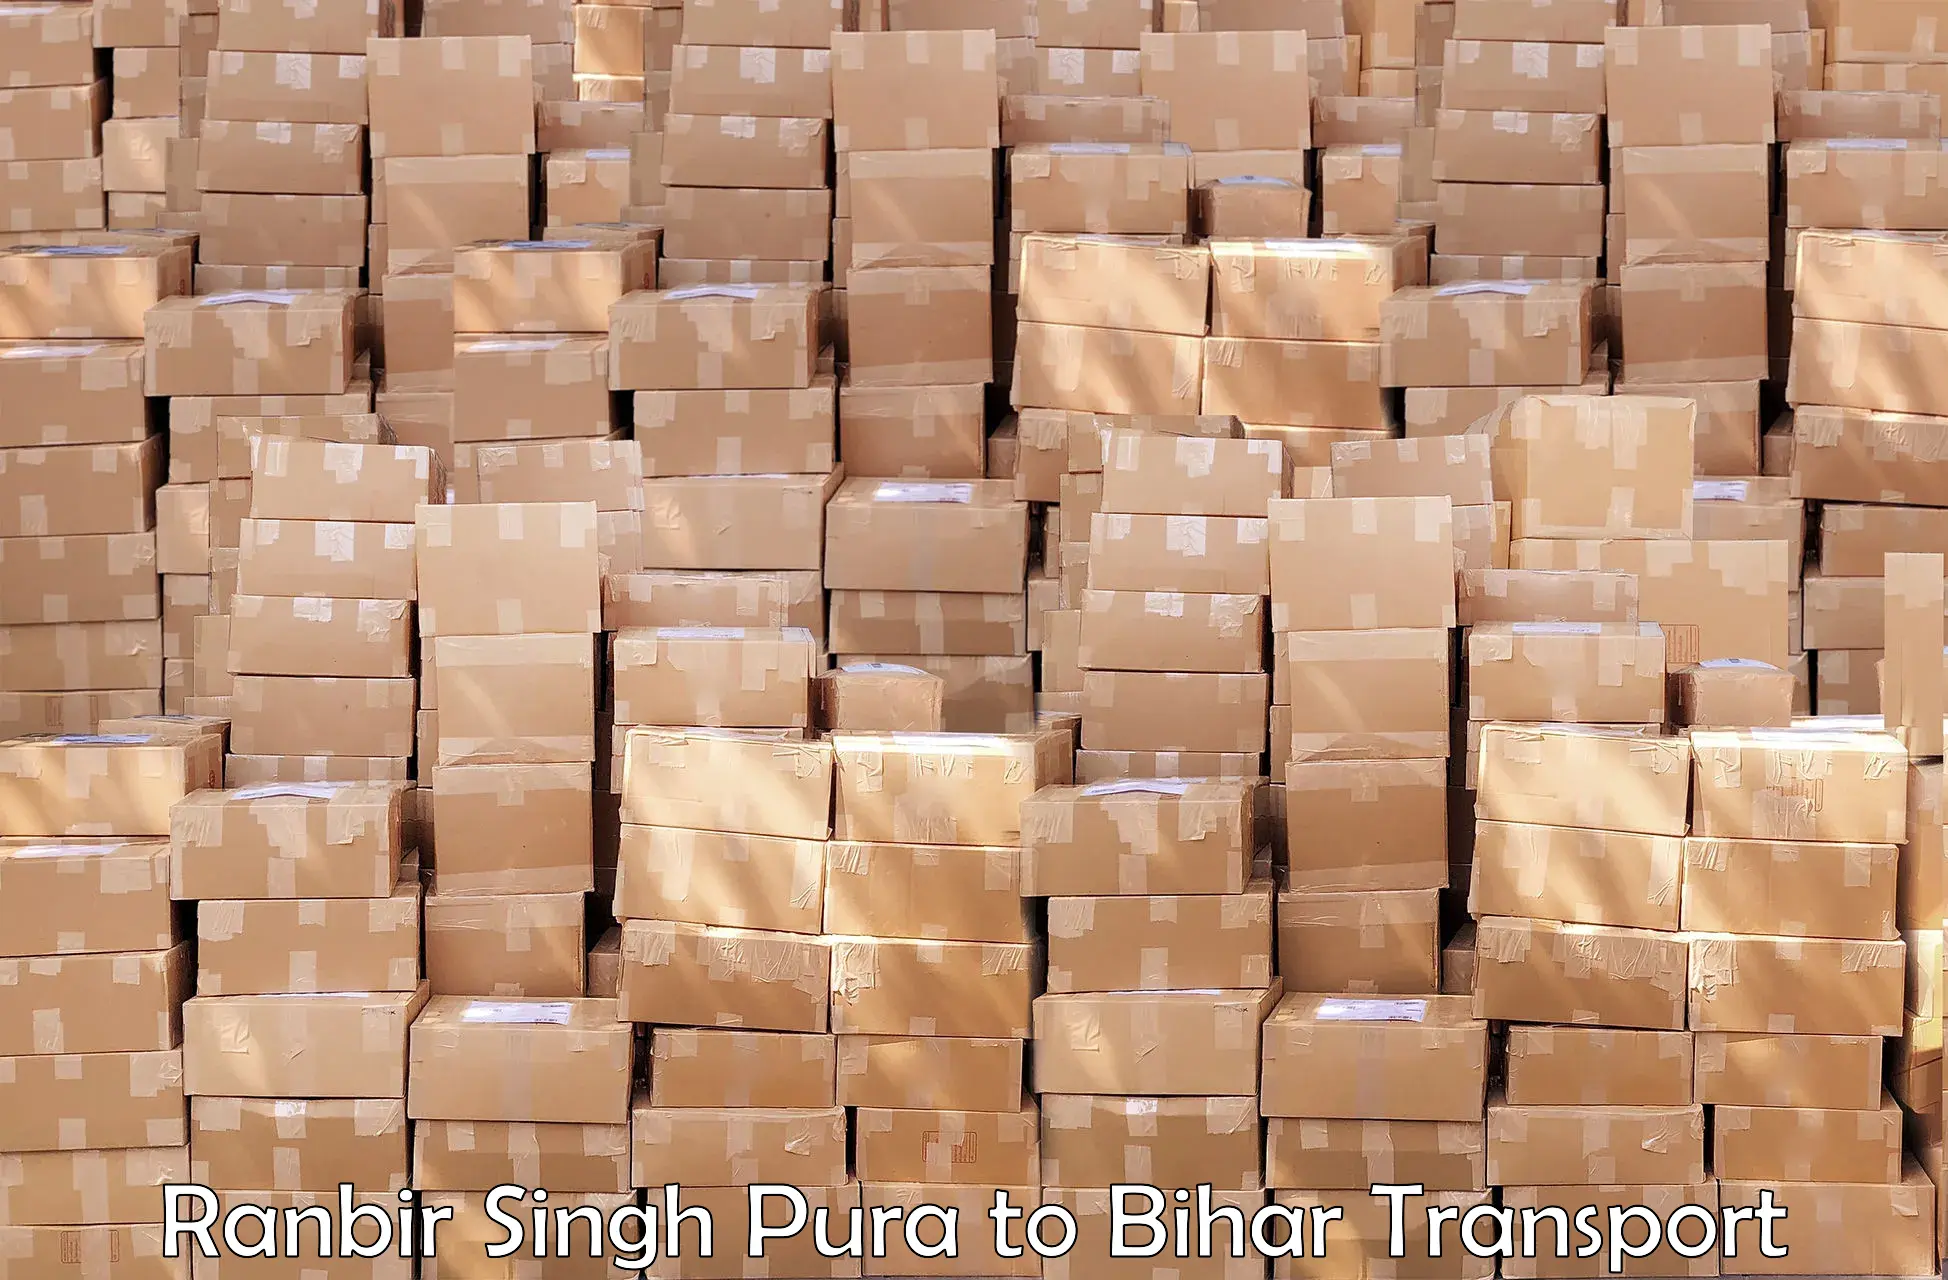 Daily parcel service transport Ranbir Singh Pura to Hajipur Vaishali